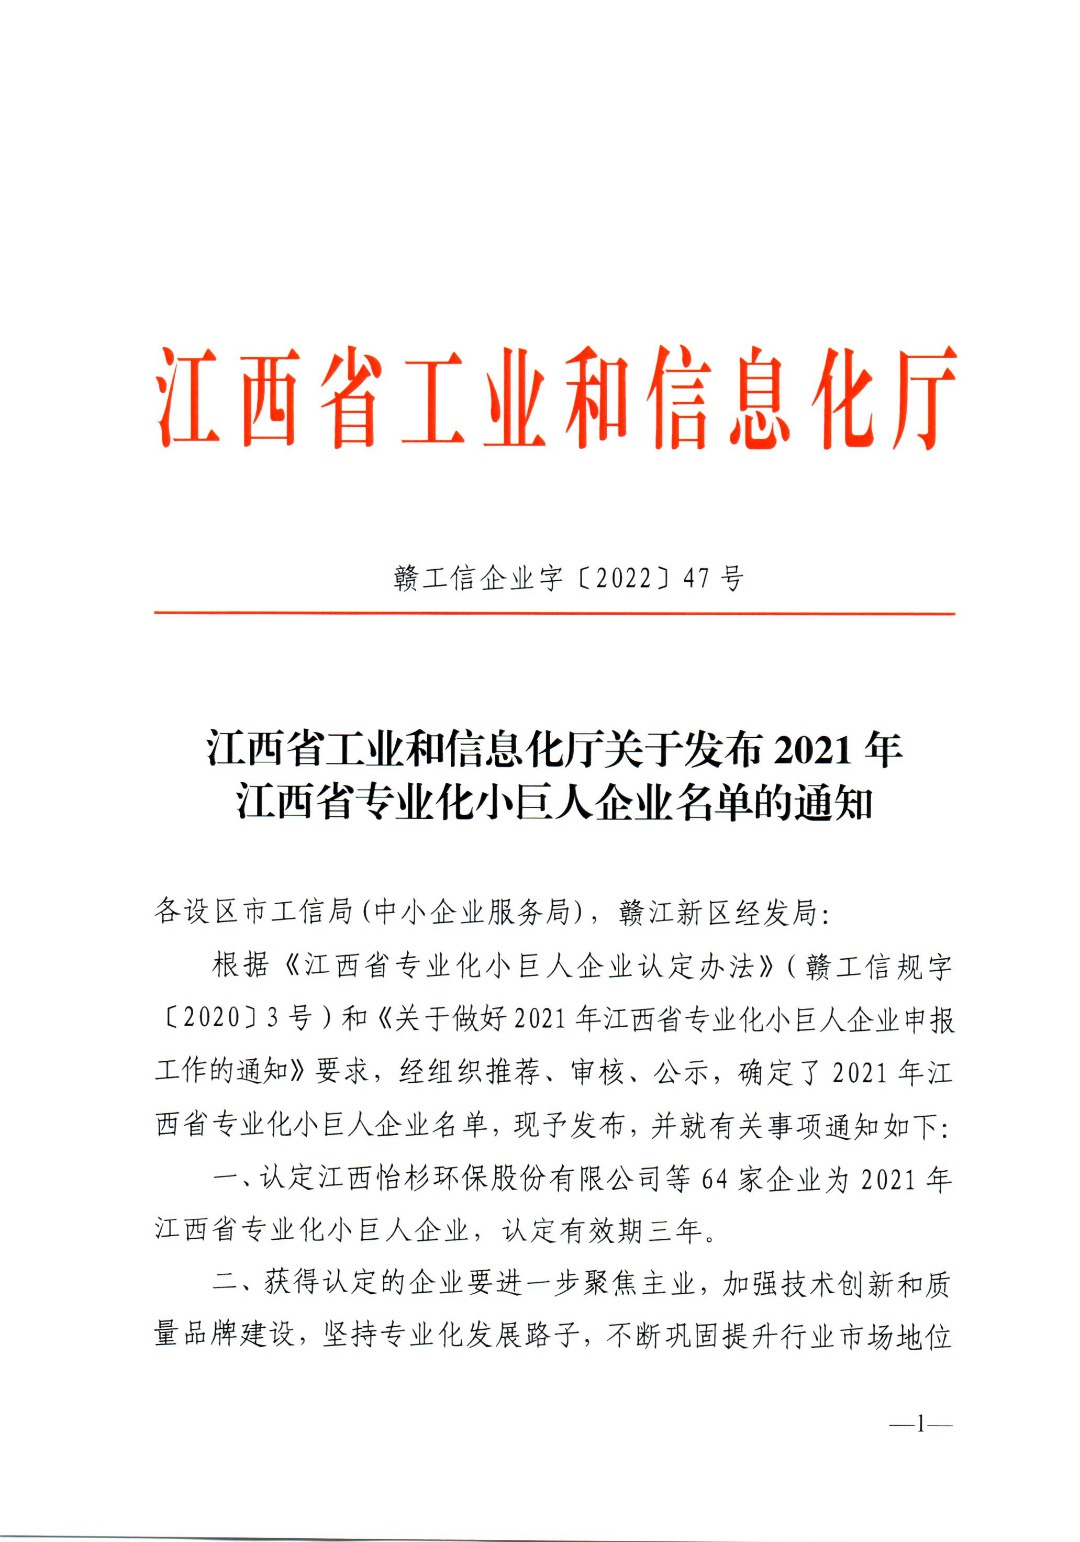 热烈祝贺我公司荣获“江西省专业化小巨人企业”称号